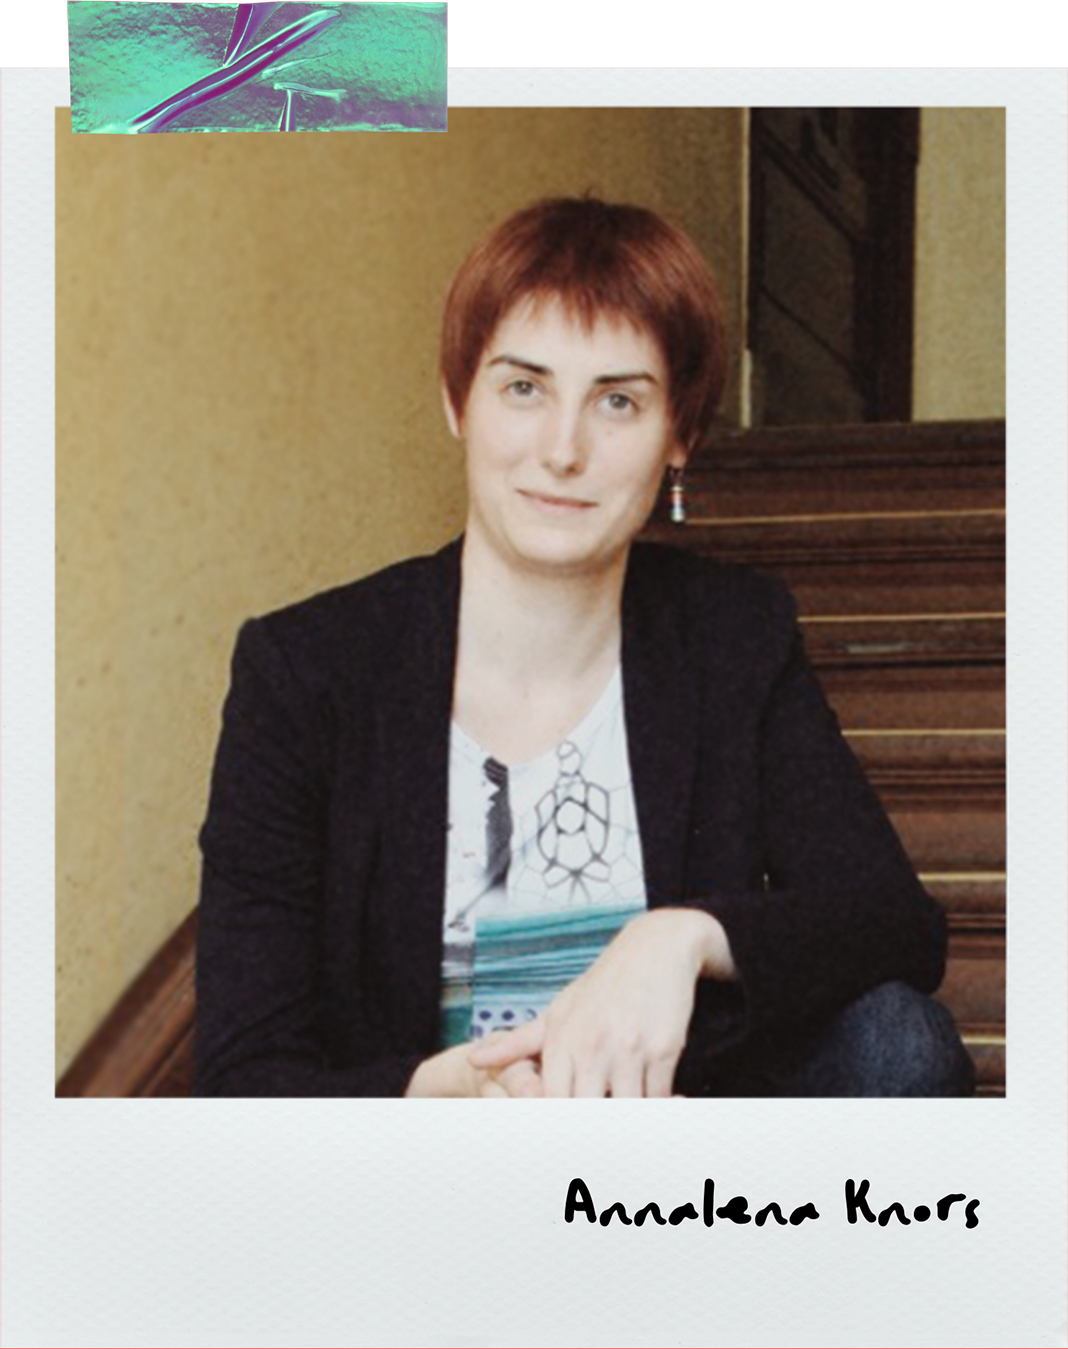 Porträtfoto von Annalena Knors. Sie nutzt einen Screenreader beim Lesen von Online-Inhalten.